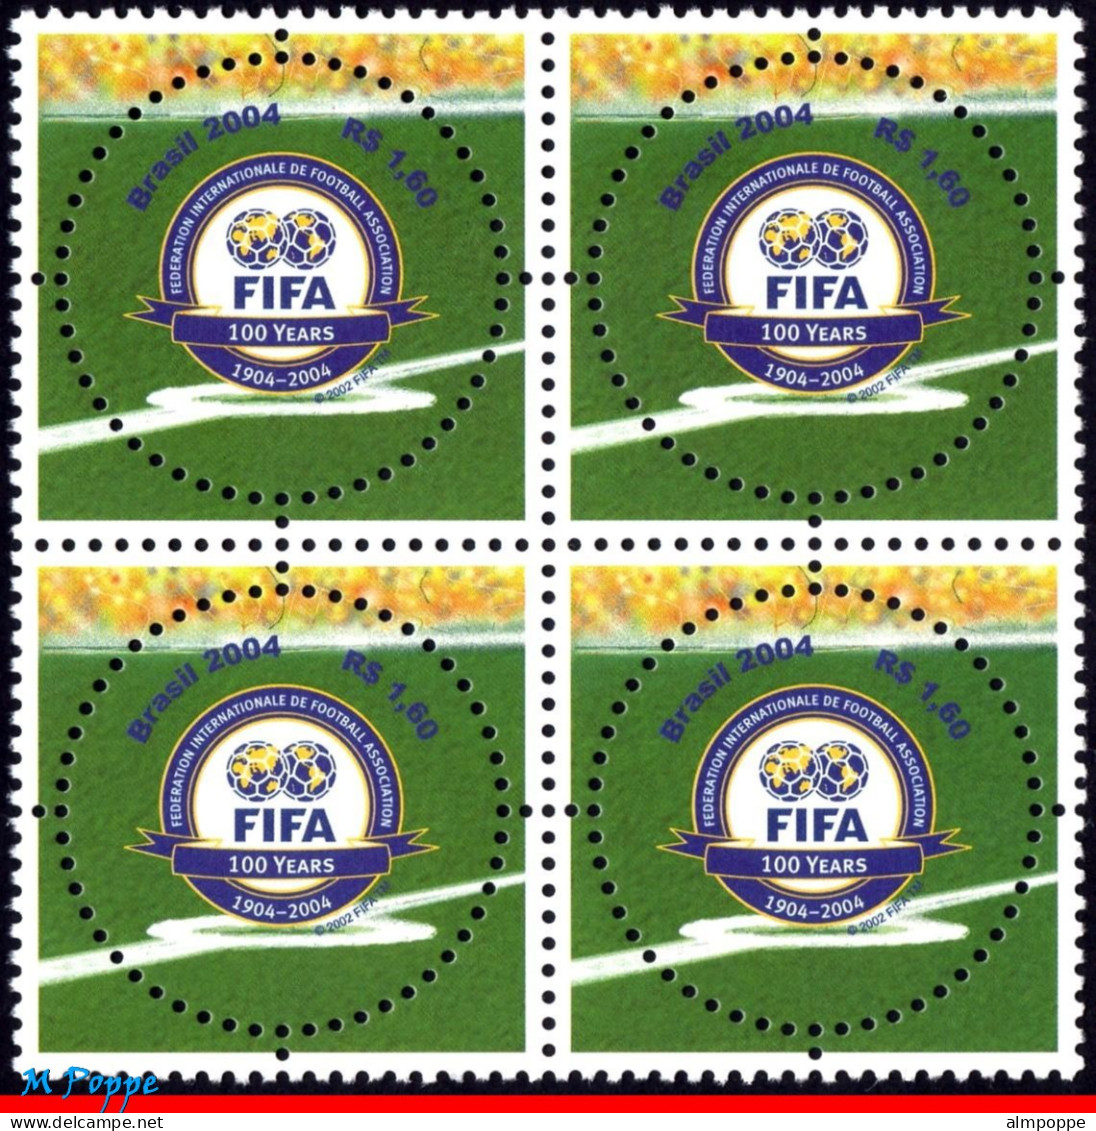 Ref. BR-2924-Q BRAZIL 2004 - FIFA CENTENARY, SPORT,MI# 3357, BLOCK MNH, FOOTBALL SOCCER 4V Sc# 2924 - Blocks & Kleinbögen